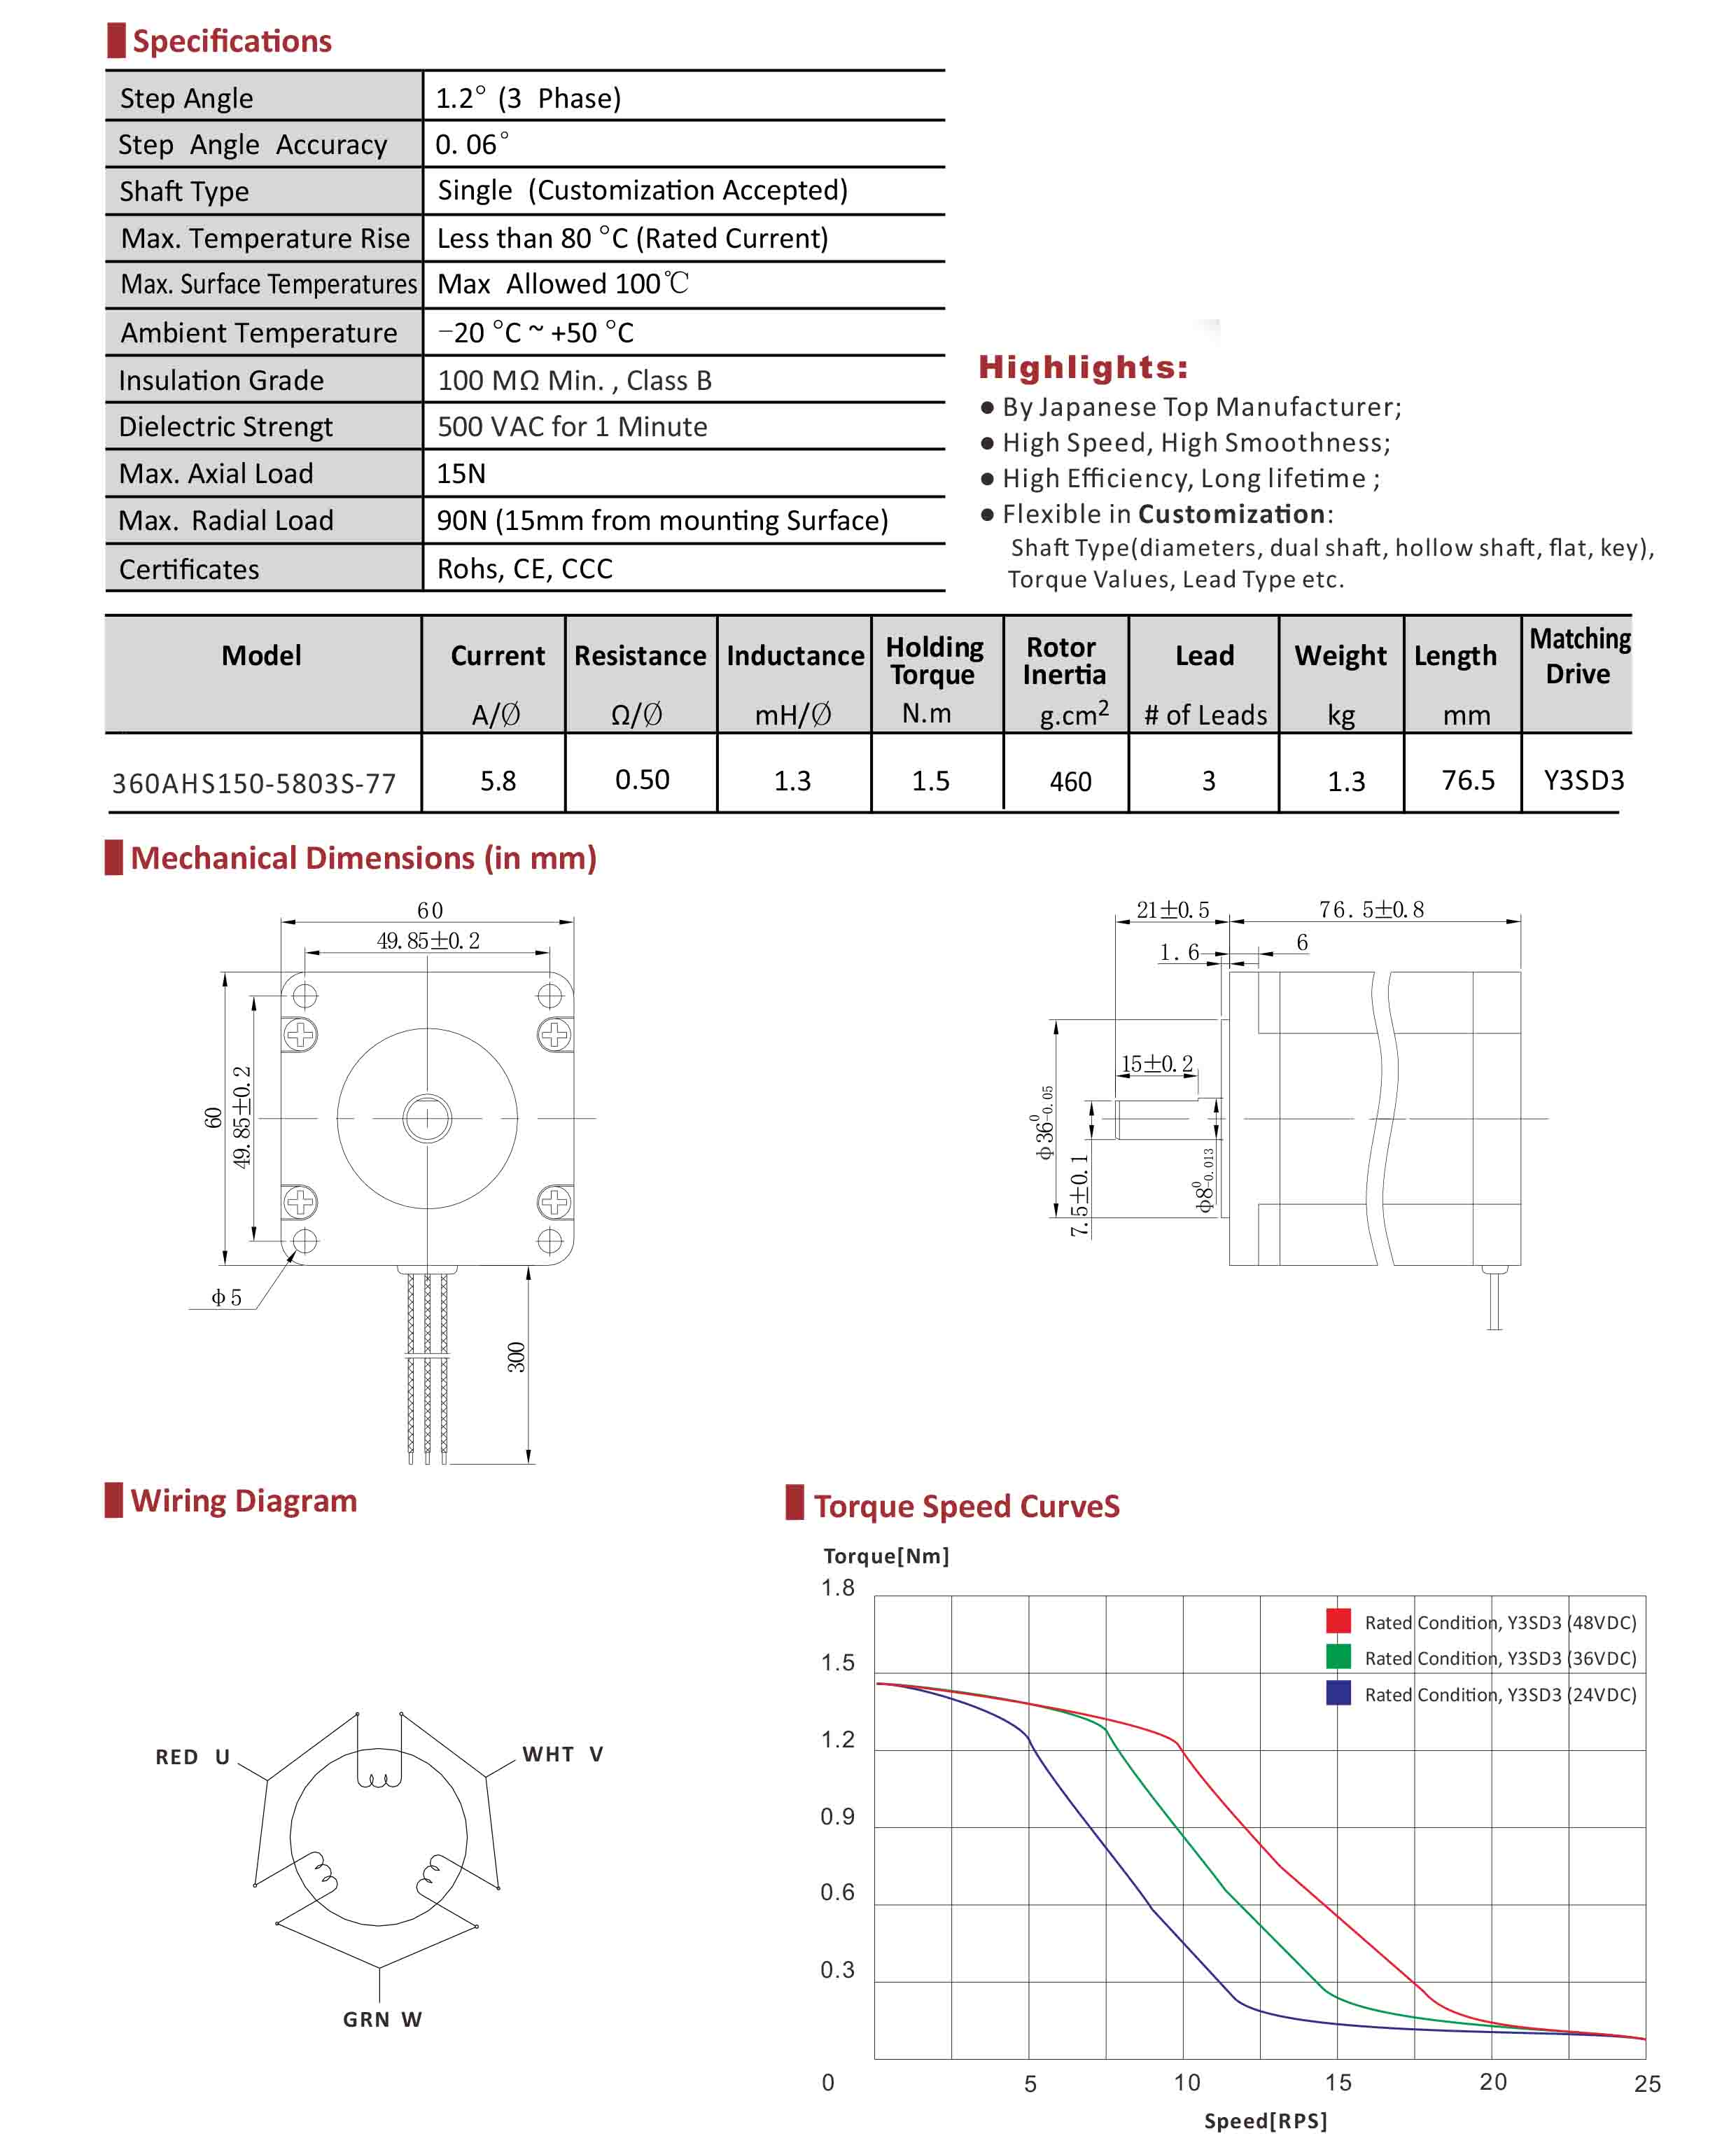 360AHS150 3 Phase Hybrid Stepper Motor Data Sheet.jpg